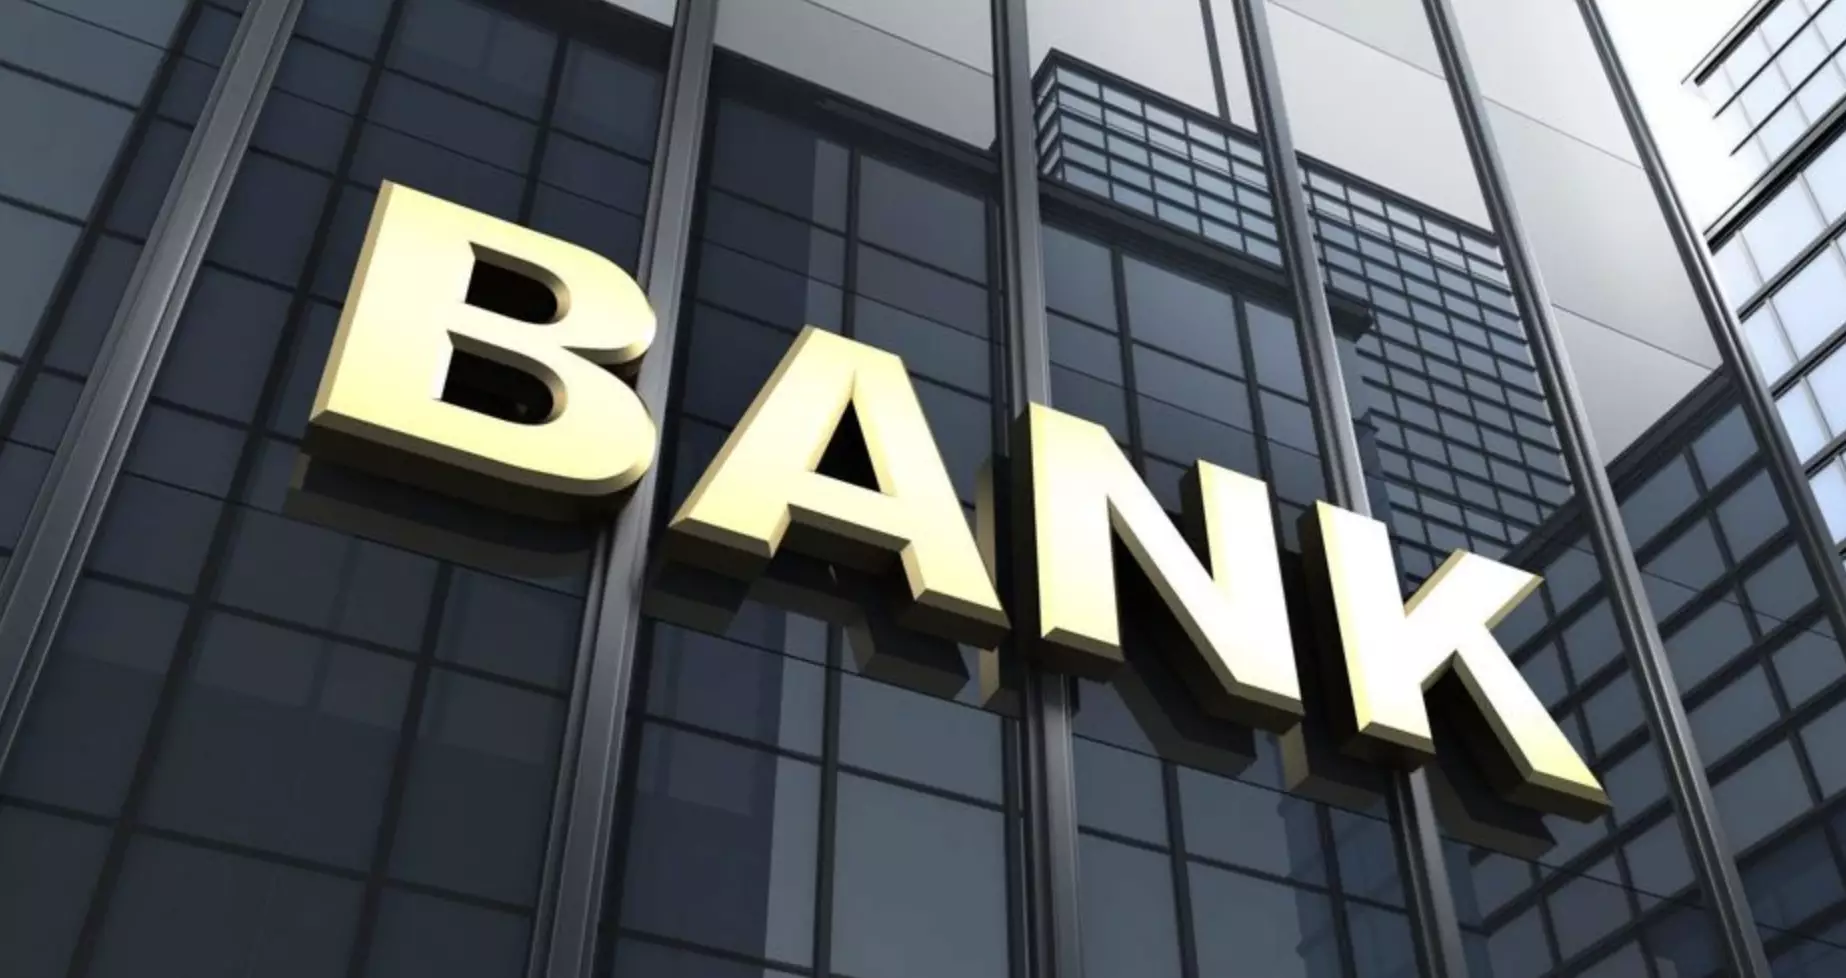 Банки Казахстана стабильны и высоко капитализированы даже при реализации шоков – АРРФР